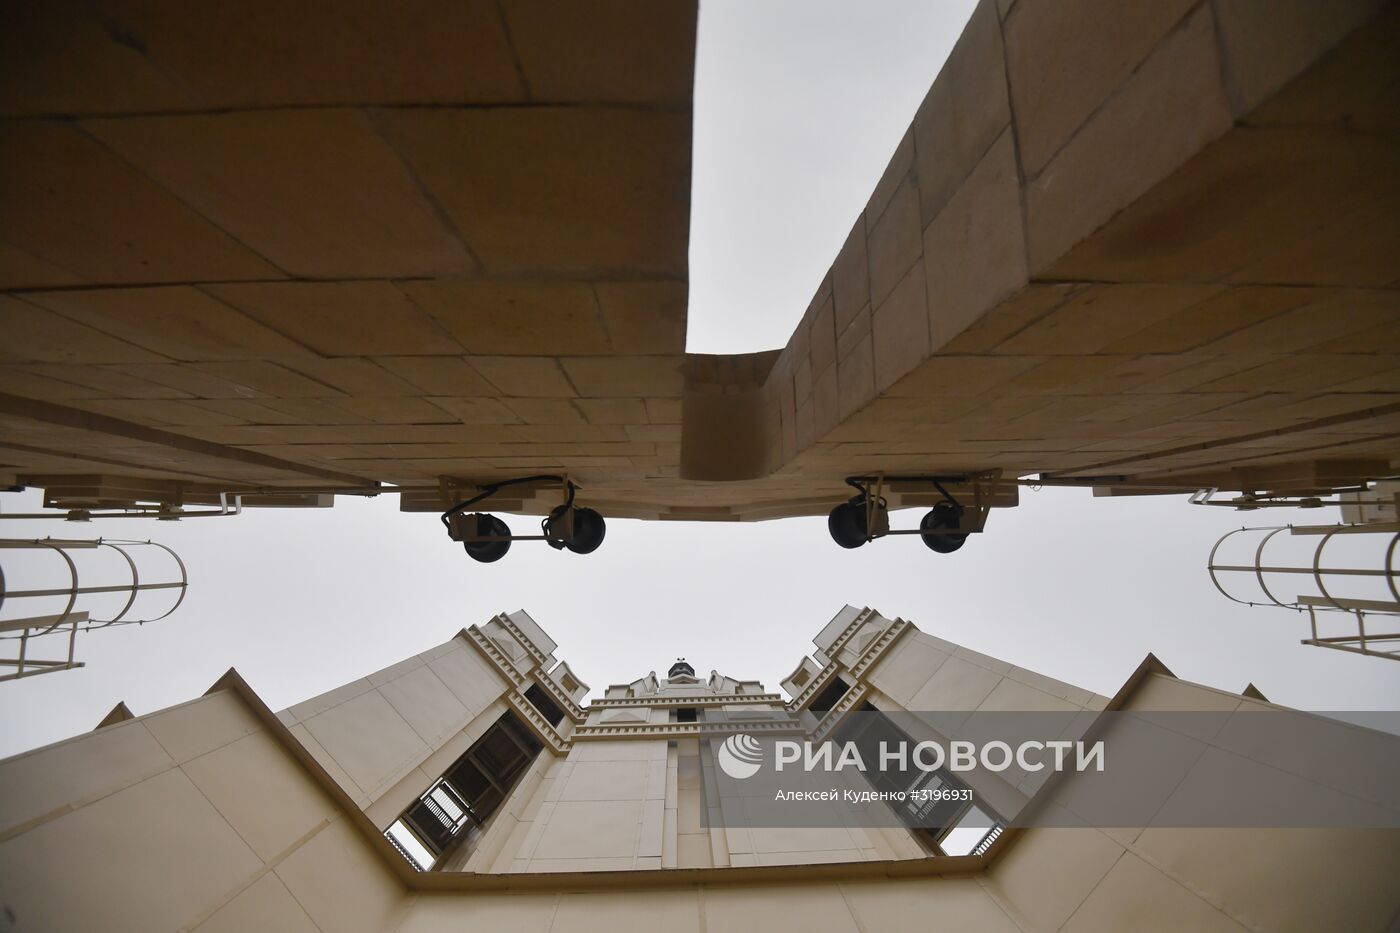 Завершение реконструкции шпиля здания МИД РФ